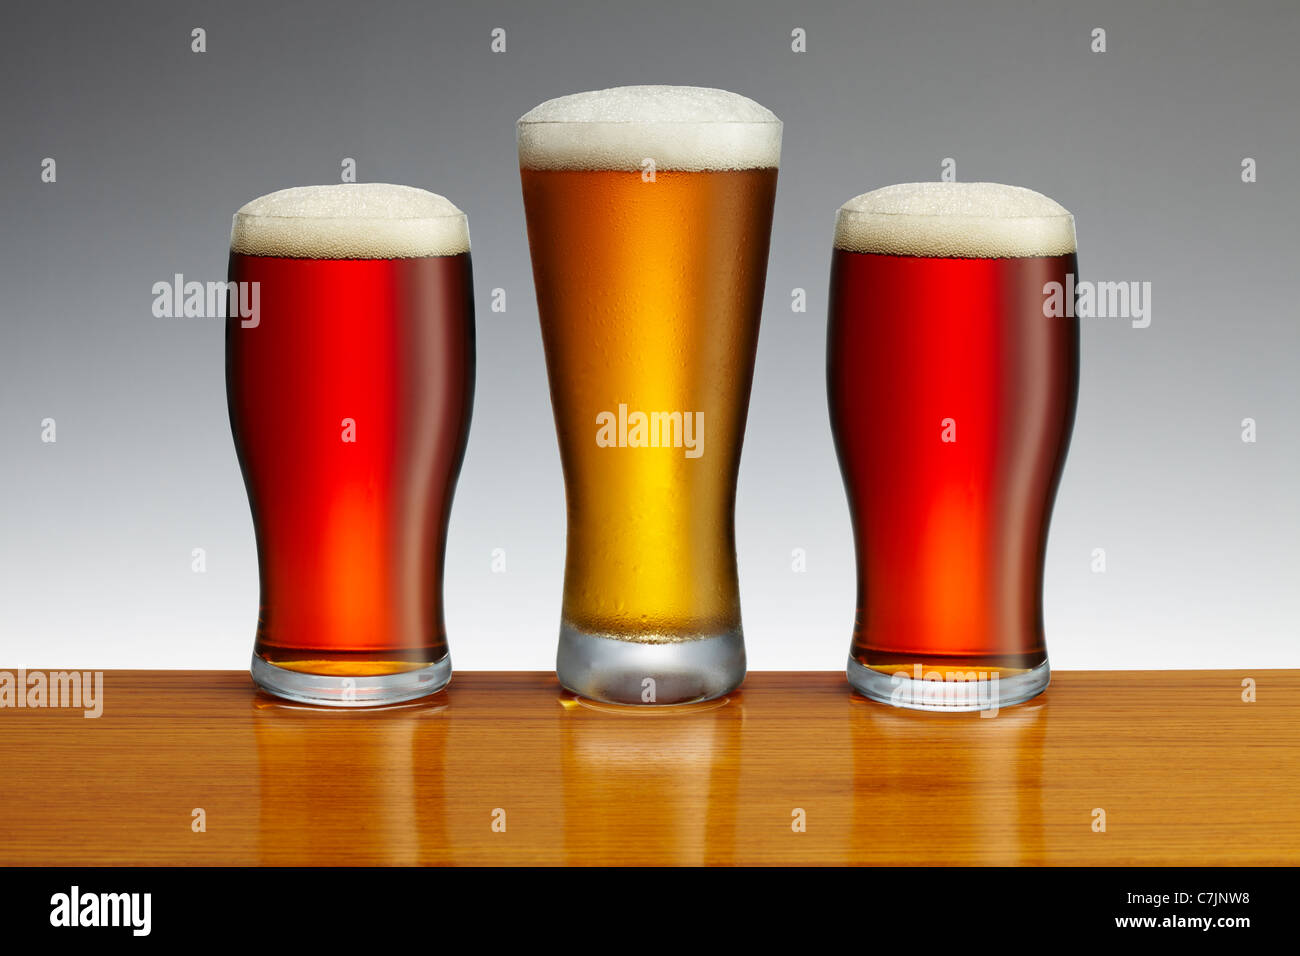 Due pinte di birra e una pinta di birra lager Foto Stock